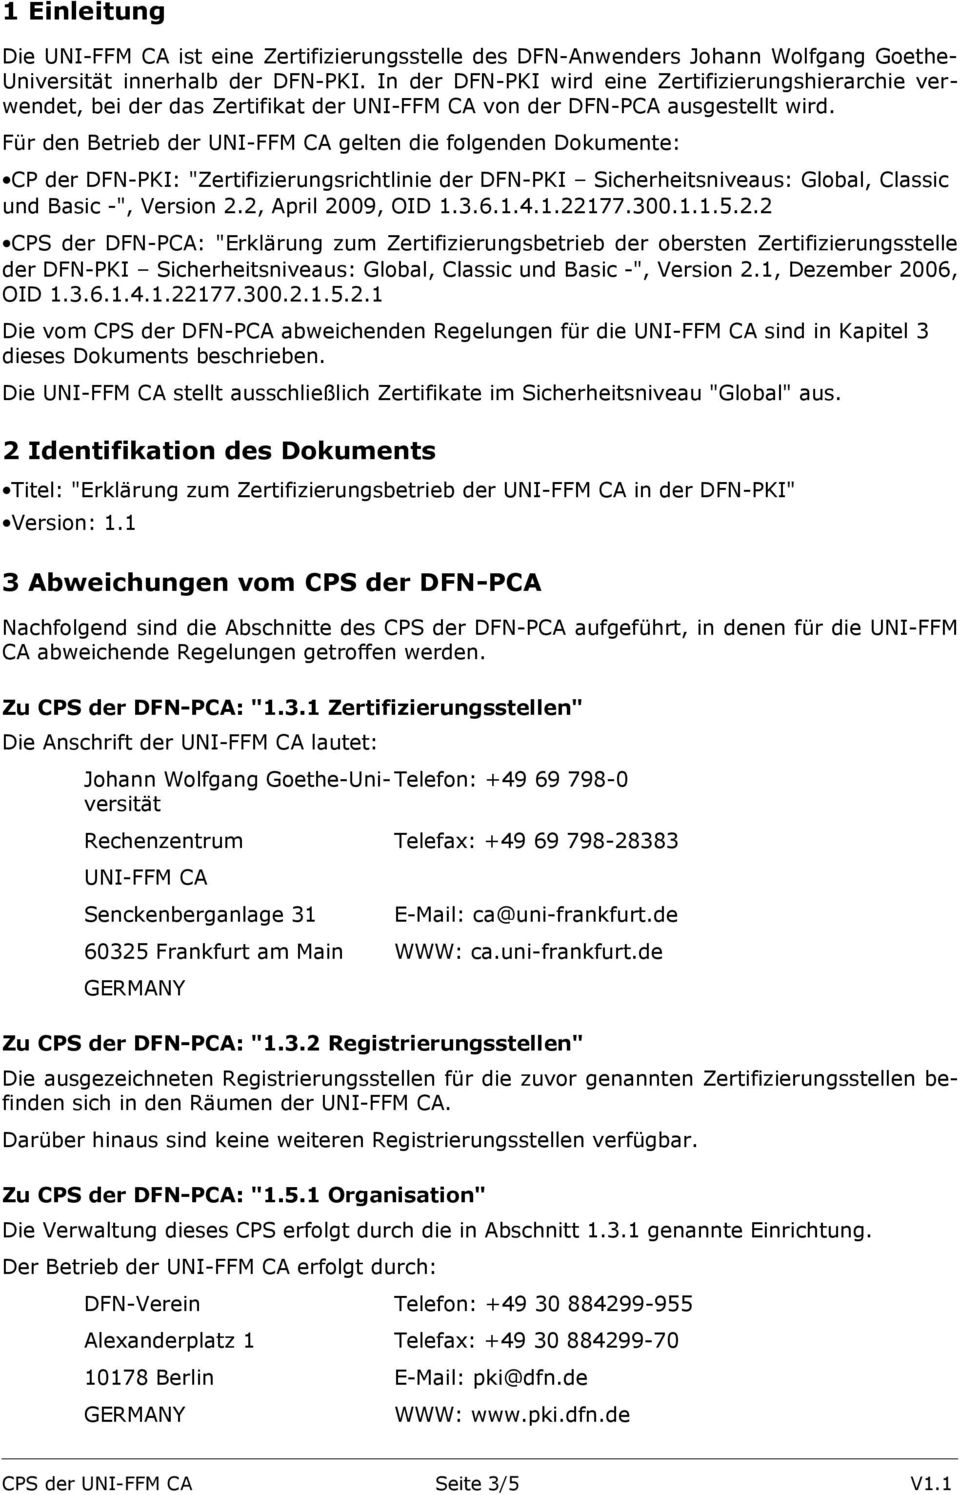 Für den Betrieb der UNI-FFM CA gelten die folgenden Dokumente: CP der DFN-PKI: "Zertifizierungsrichtlinie der DFN-PKI Sicherheitsniveaus: Global, Classic und Basic -", Version 2.2, April 2009, OID 1.